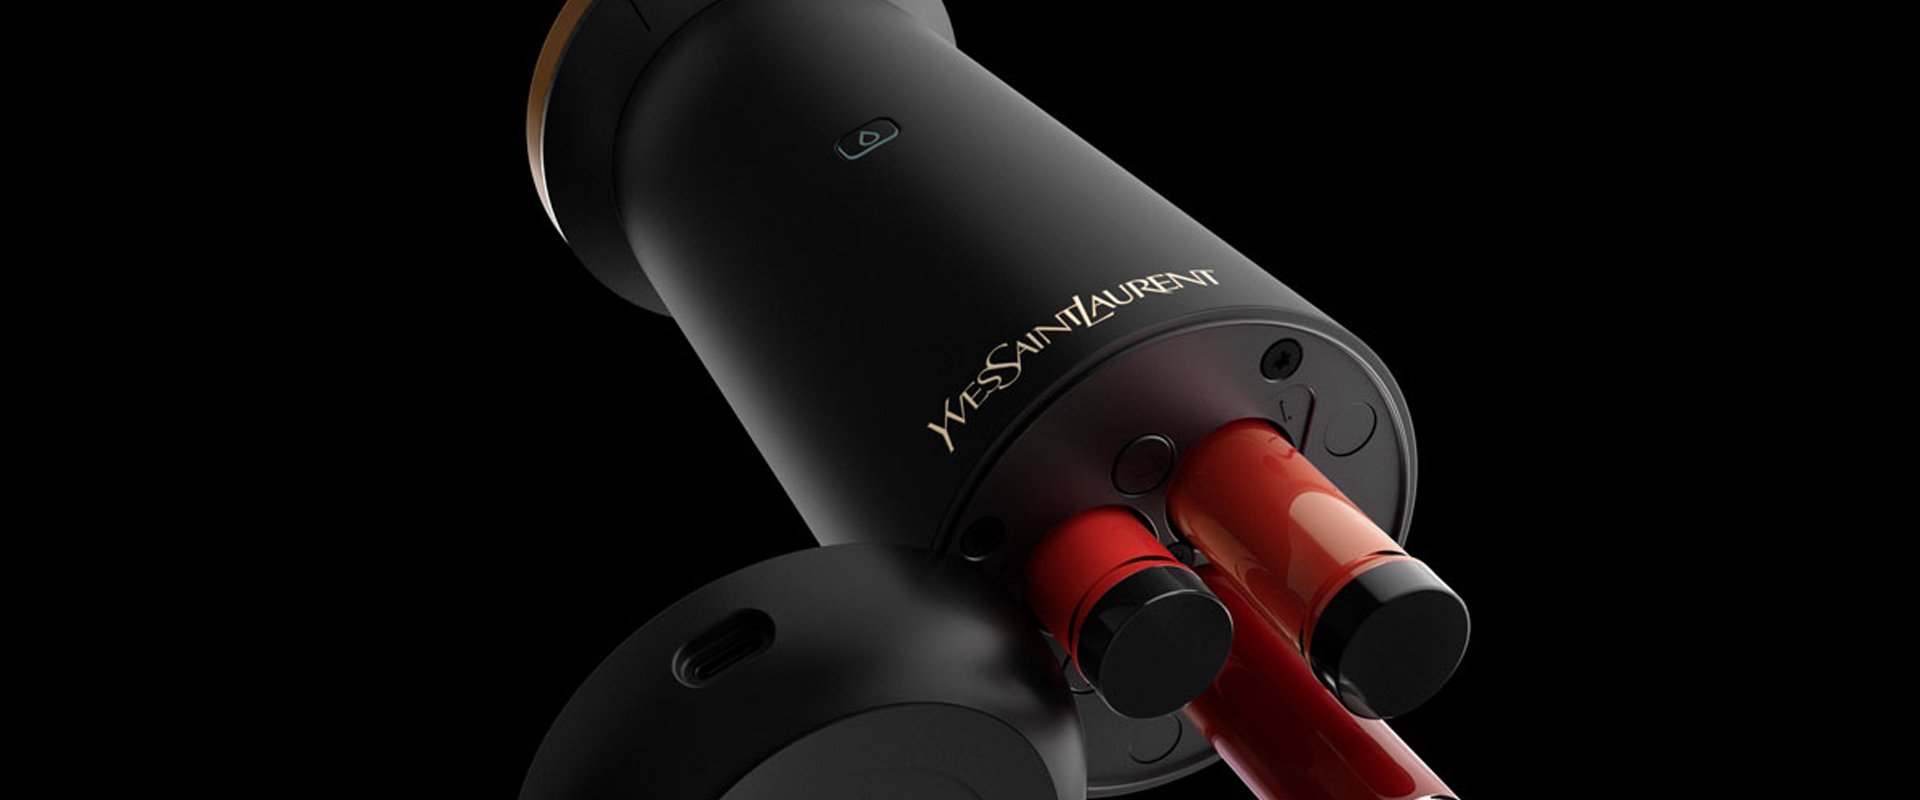 Yves Saint Laurent présente un gadget révolutionnaire pour créer son rouge  à lèvres maison - Elle